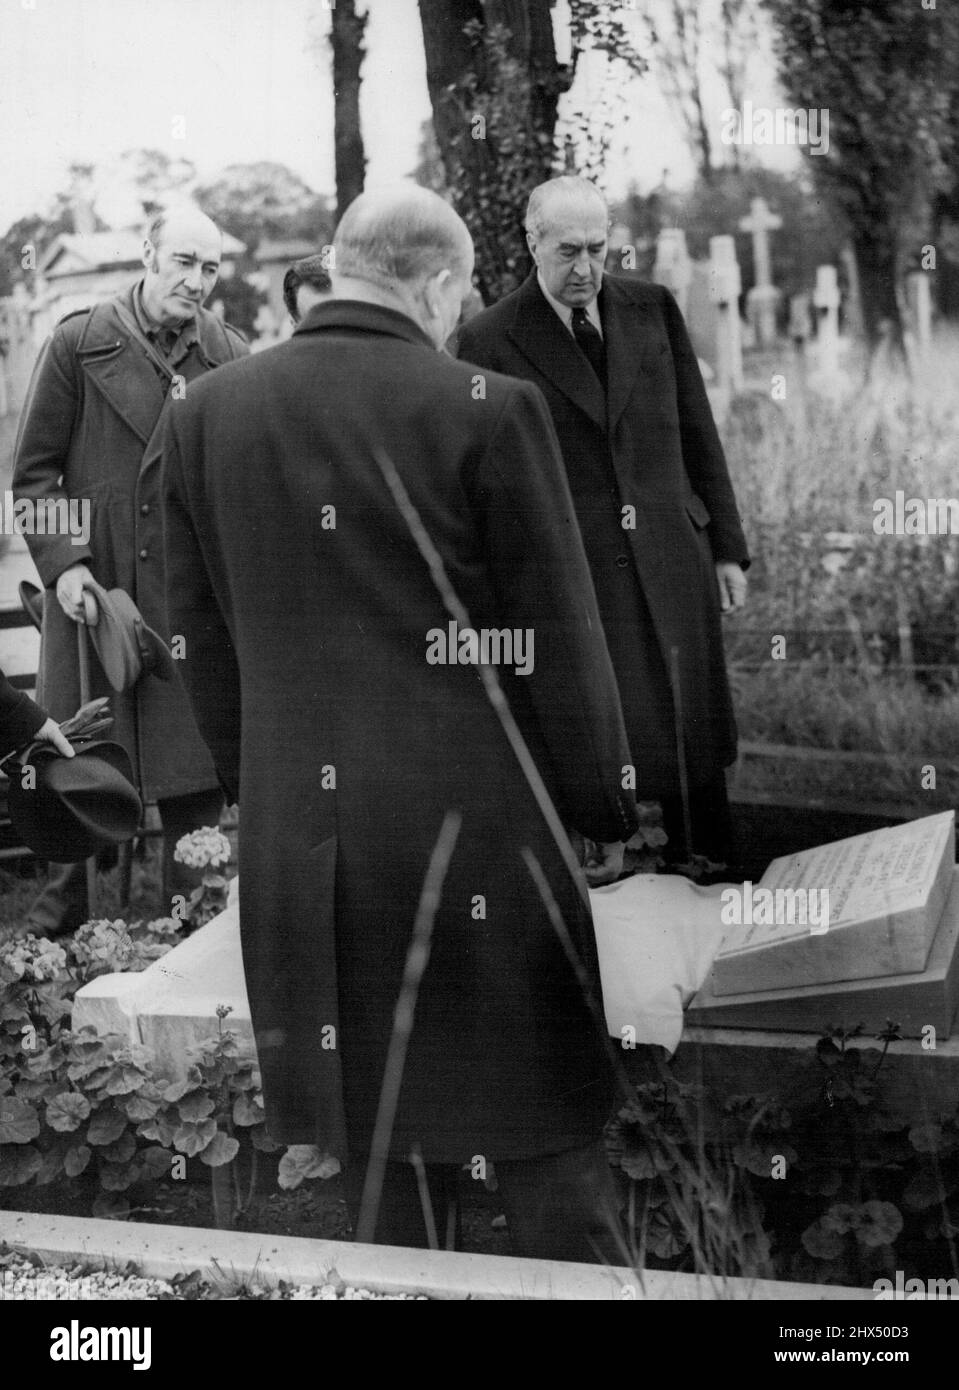 Célèbre scientifique polonais commémoré dans Un cimetière de Londres -- Une plaque commémorative à Sir Paul Edmund Strzelecki, C.B., K.C.M.G., F.R.C.S., le célèbre explorateur polonais, scientifique et philanthrope, a été dévoilée aujourd'hui sur sa tombe dans le cimetière Kensal Rise. L'honorable Victor Bruce, Haut-Commissaire pour l'Australie, lorsqu'un service commémoratif a également eu lieu à la tombe. Sir Paul Strzelecki, arpente et donne le nom de Kosciuzsko au plus haut sommet des Alpes australiennes en 1840. Il est mort en 1873 et sa tombe a été restaurée par un comité parrainé par le gouvernement australien et polonais Banque D'Images